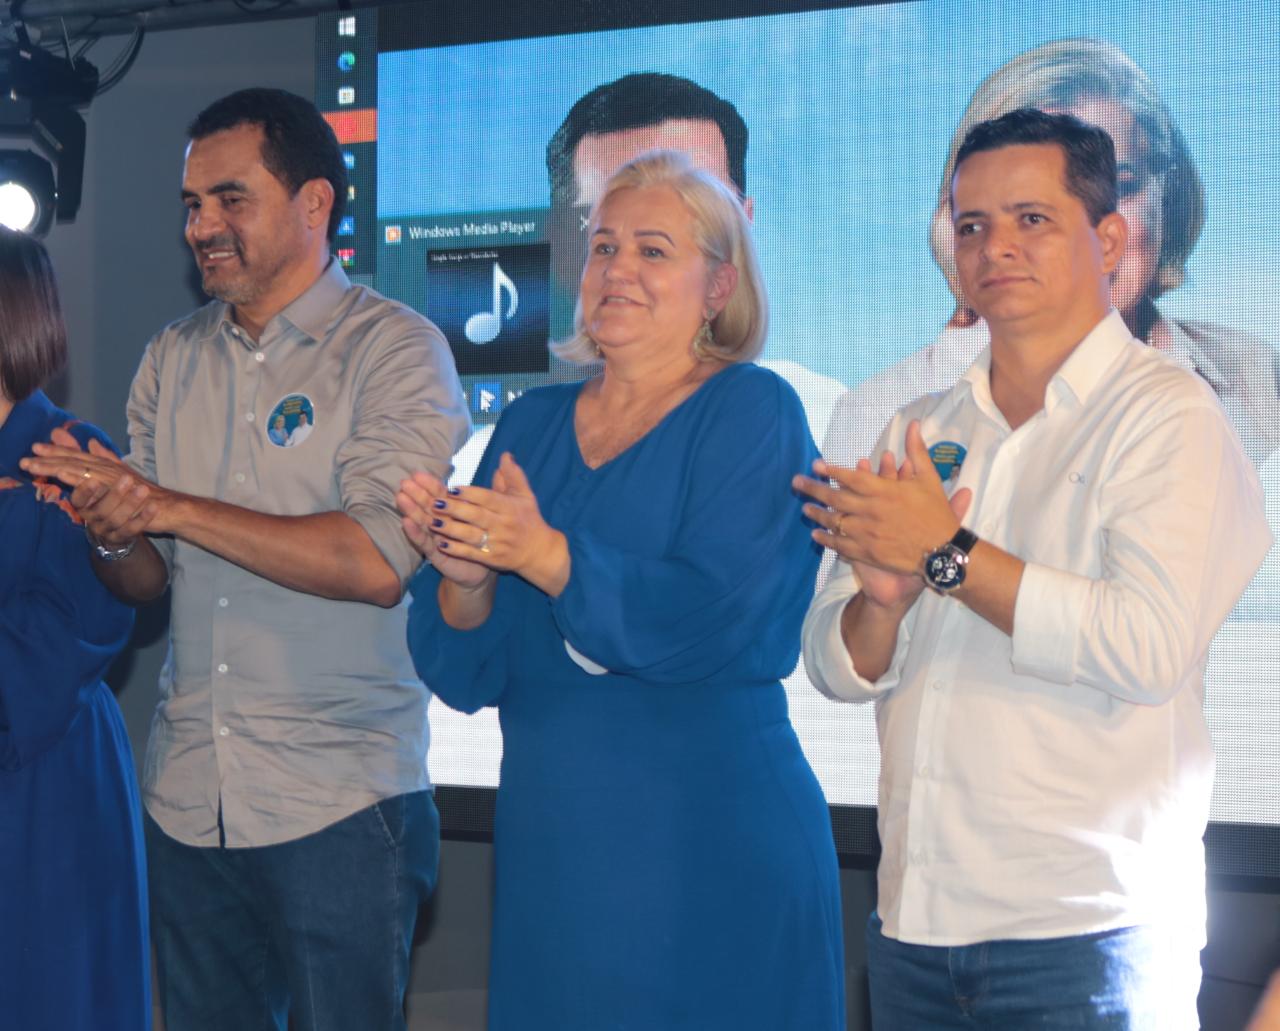 Jorge Frederico e Drª Ângela lançam pré-candidatura com um mega evento em Araguaína